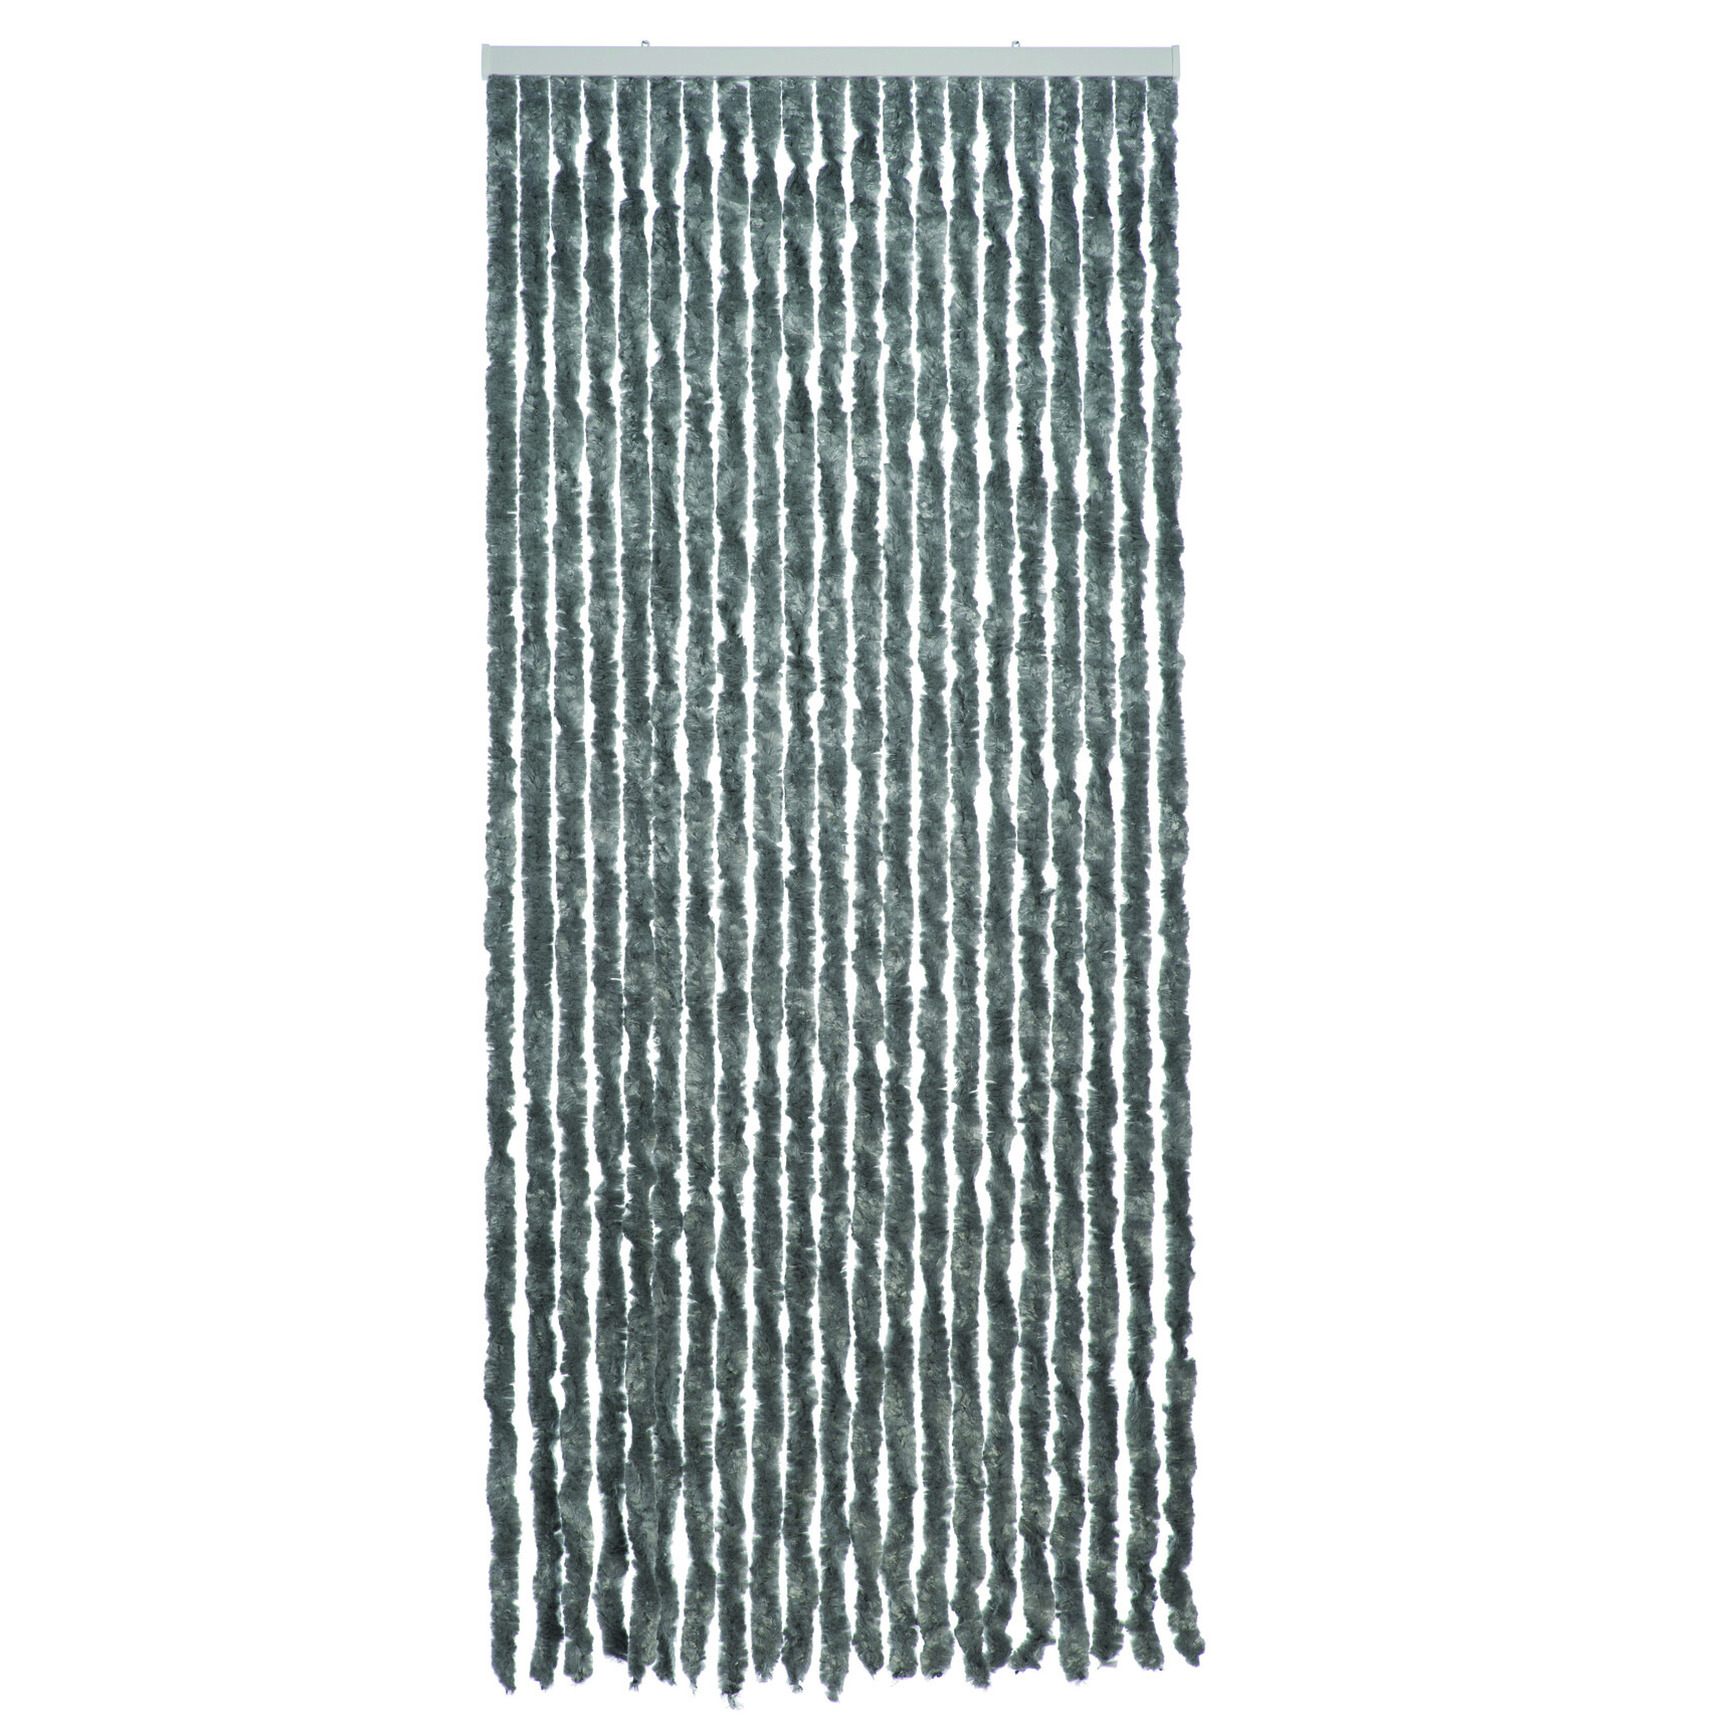 Lichtgrijs polyester stroken vliegen-insecten gordijn 93 x 210 cm